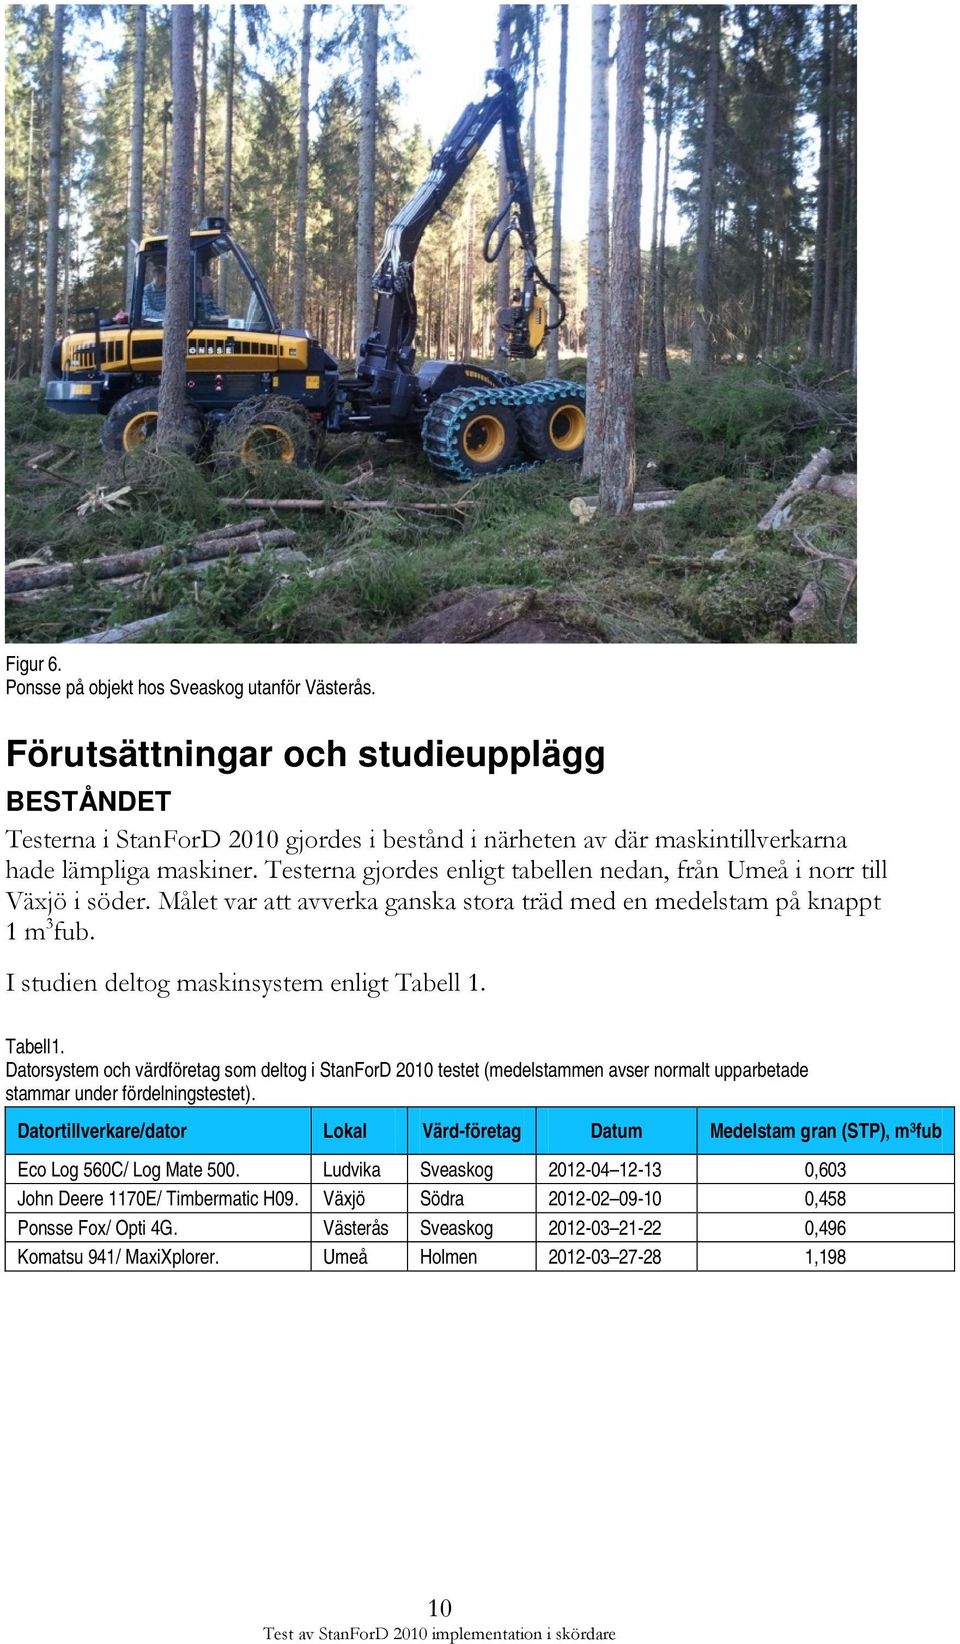 Testerna gjordes enligt tabellen nedan, från Umeå i norr till Växjö i söder. Målet var att avverka ganska stora träd med en medelstam på knappt 1 m 3 fub.